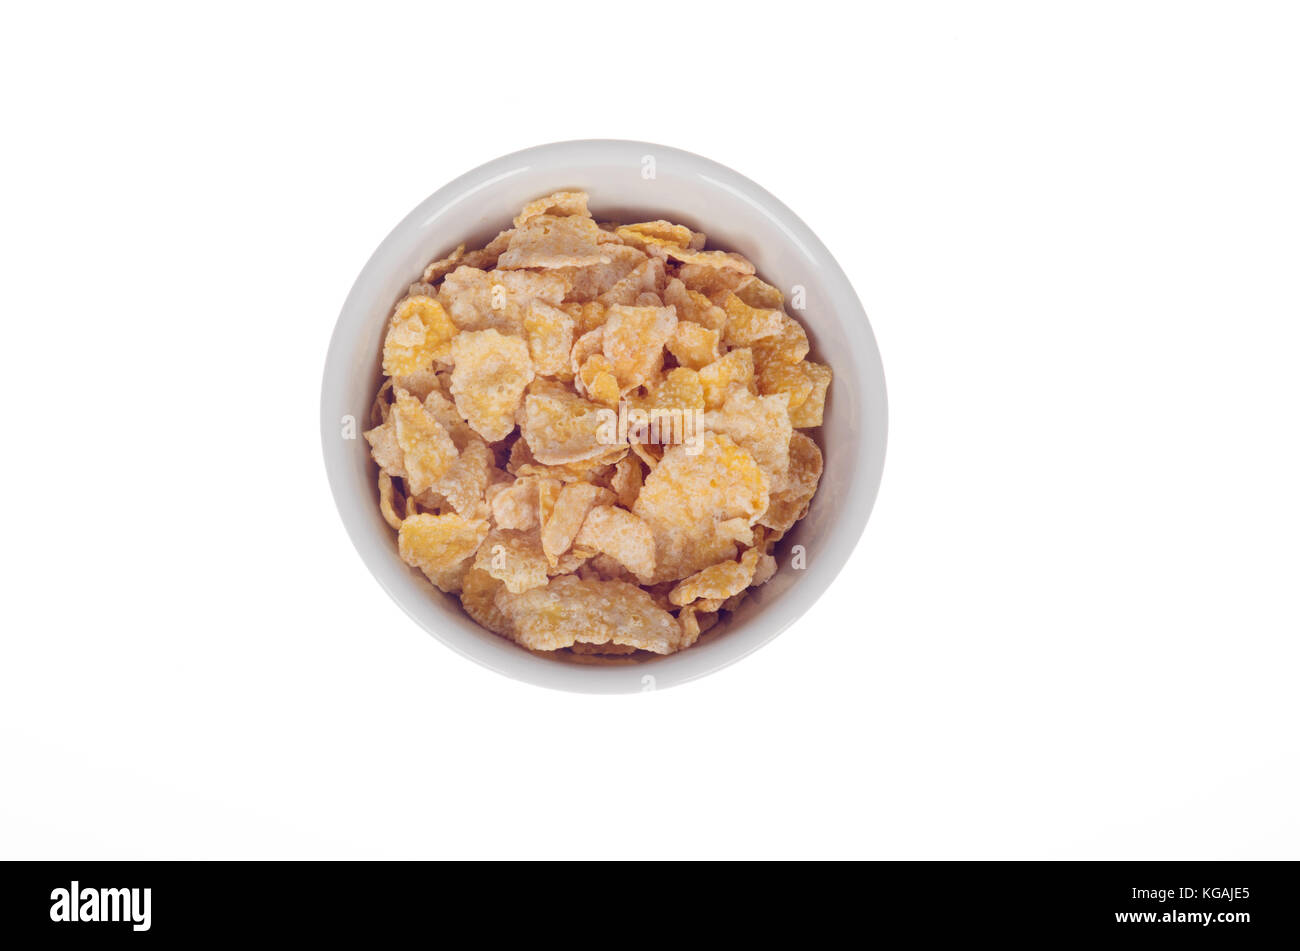 Schüssel von Kellogg's Frosted Flakes oder Frosties Zucker überzogen corn flakes Müsli in der Schüssel von oben auf weißem Hintergrund Stockfoto